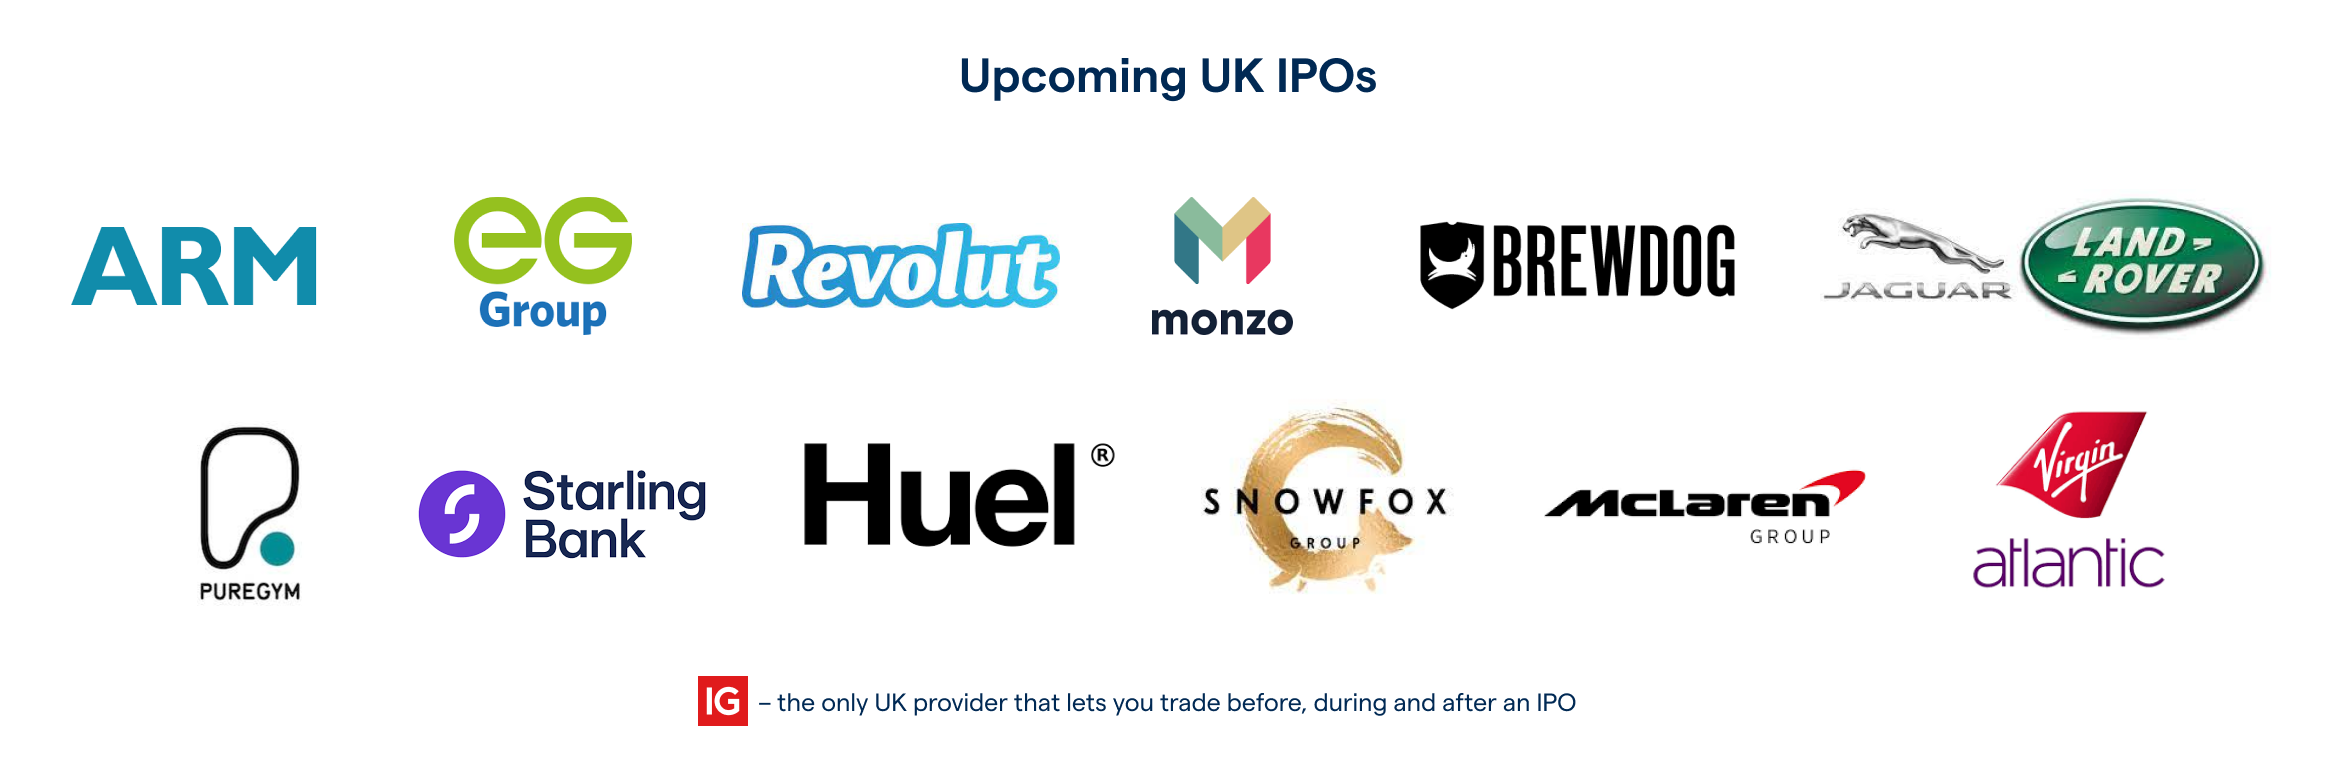 Upcoming UK IPOs